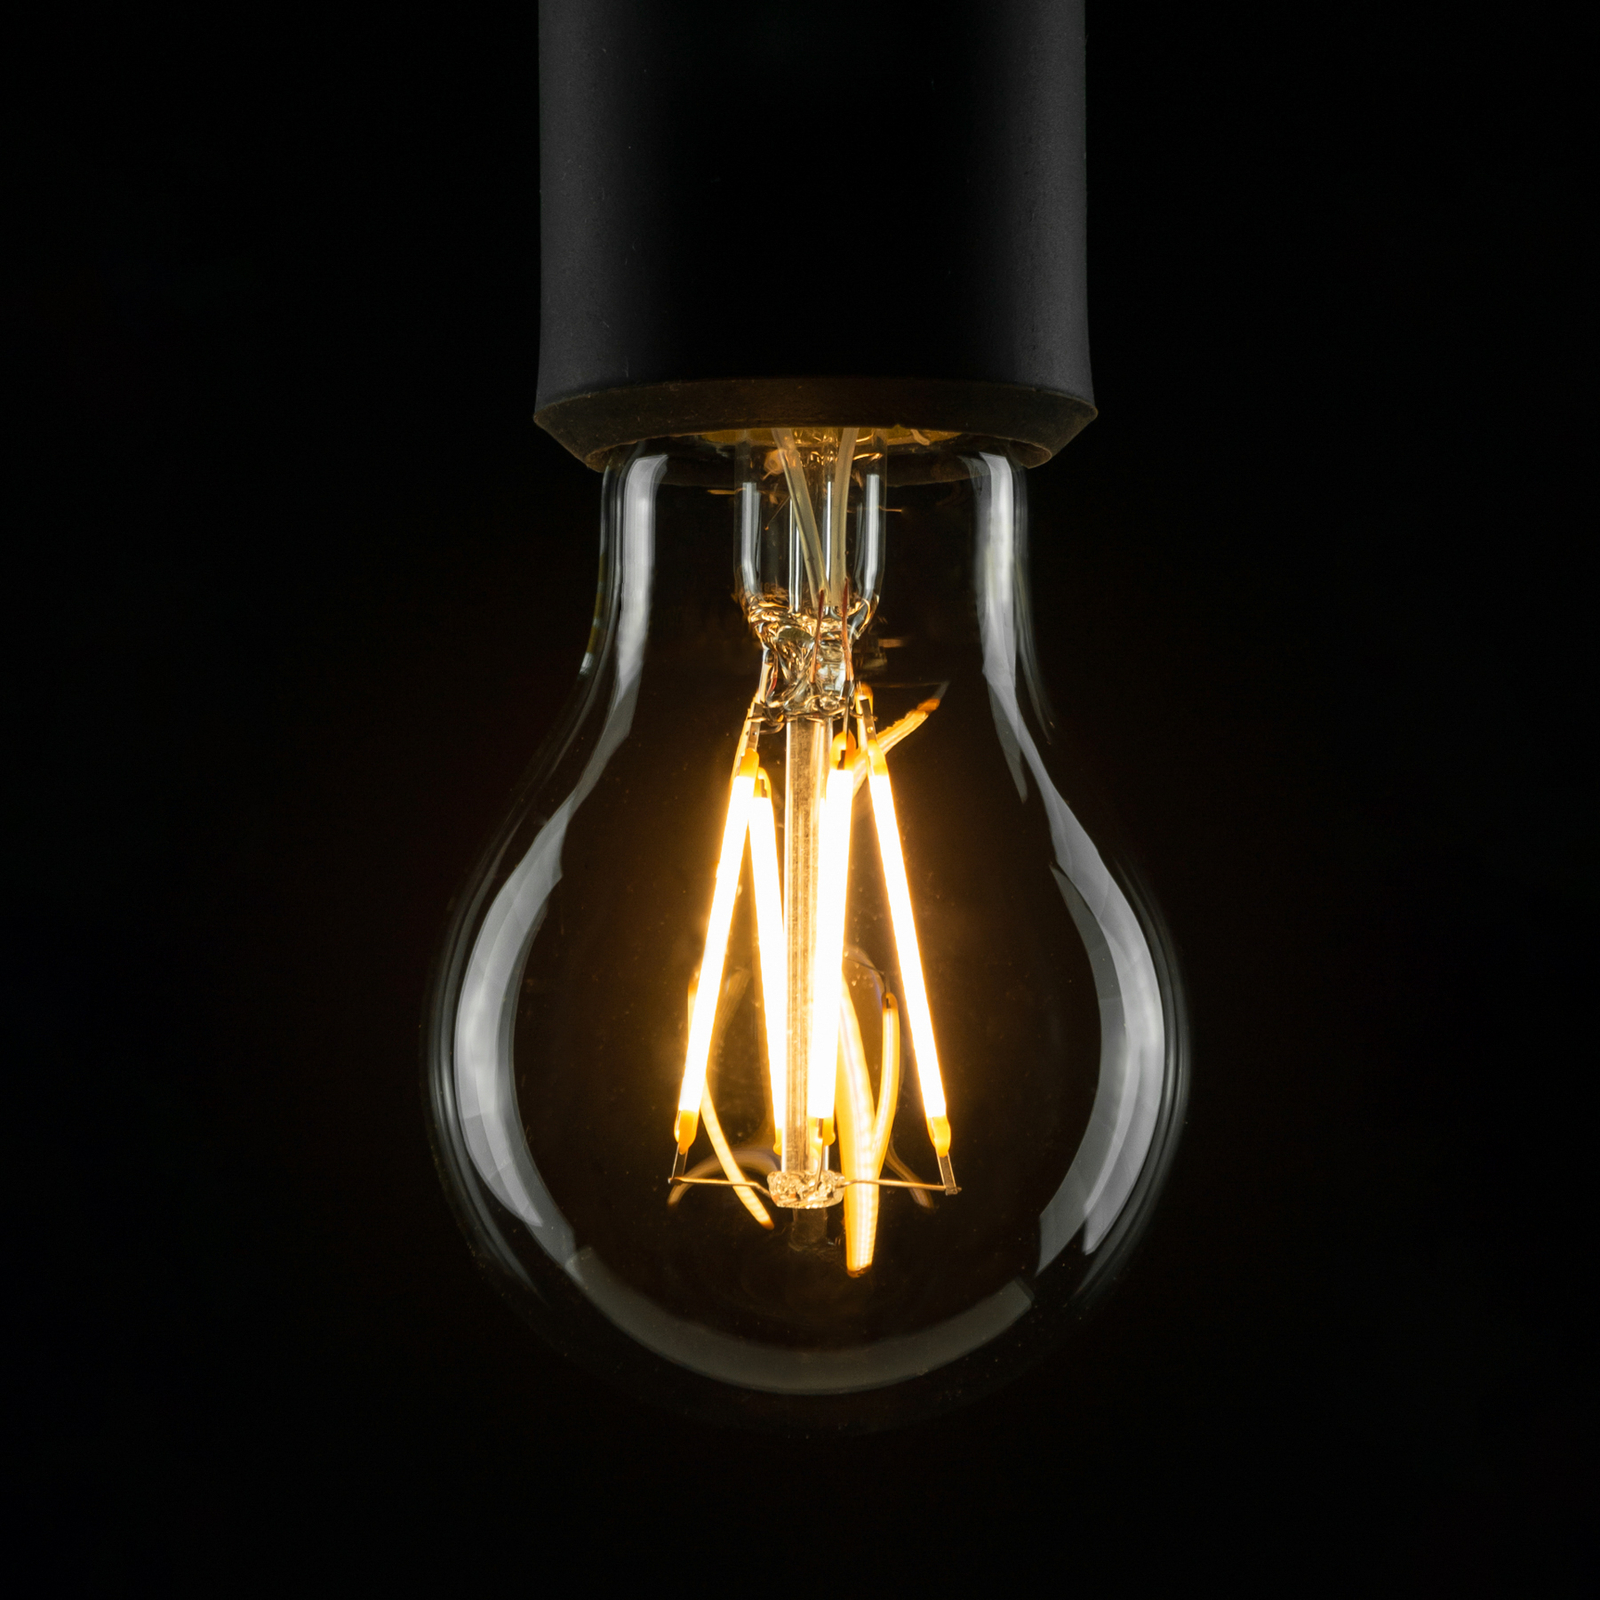 SEGULA LED lamp E27 3,2W 927 filament dimbaar